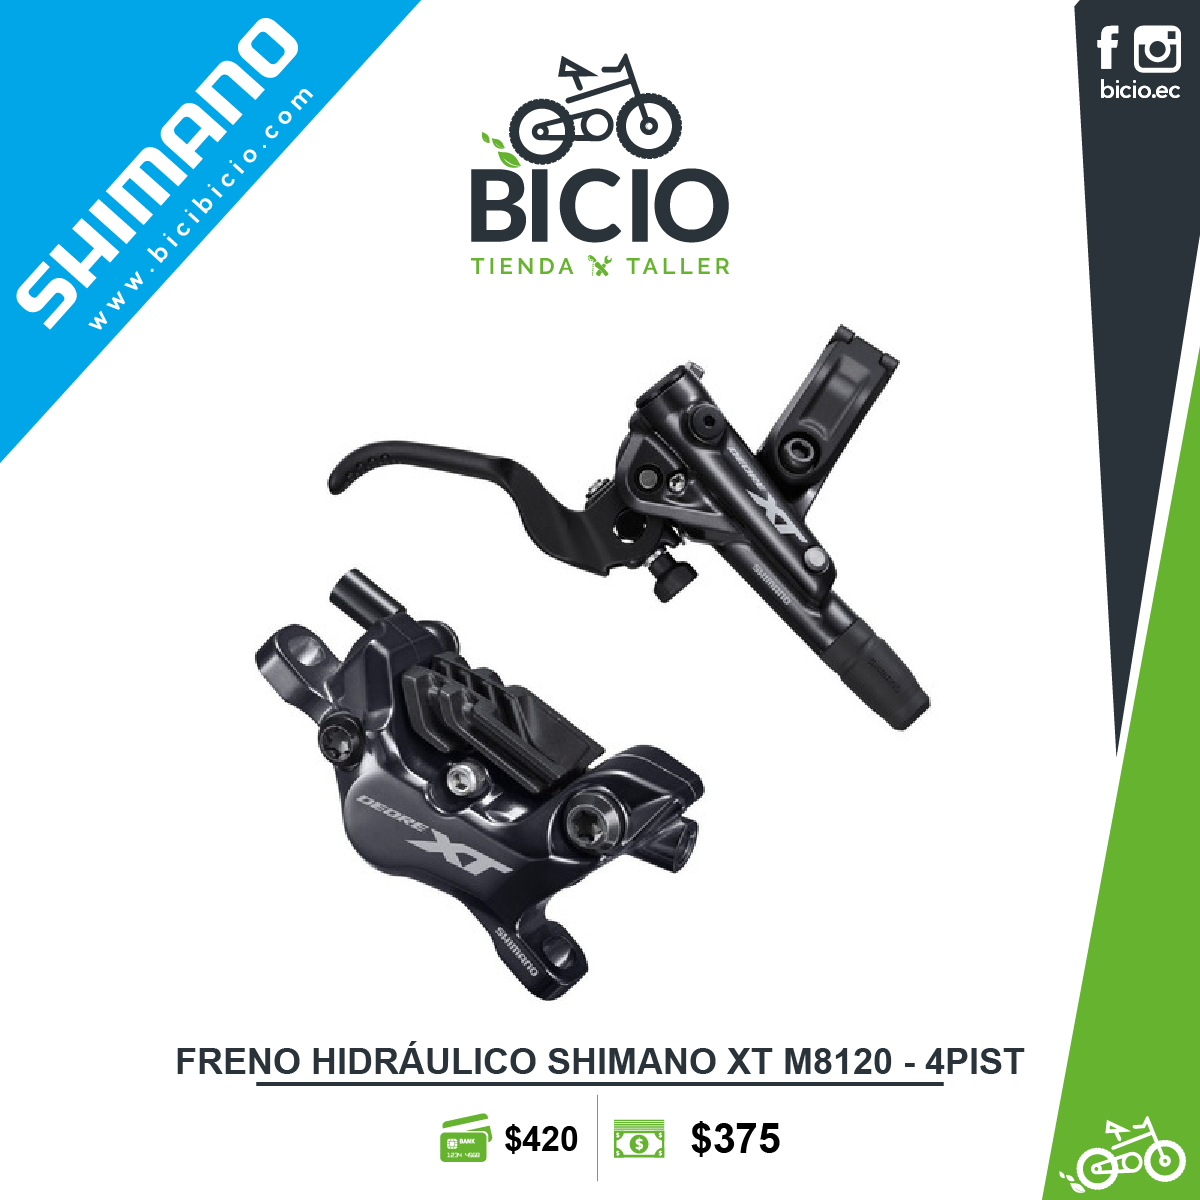 Frenos Hidráulicos Shimano XT M8120 - PISTONES - Bicio tienda - taller de bicicletas